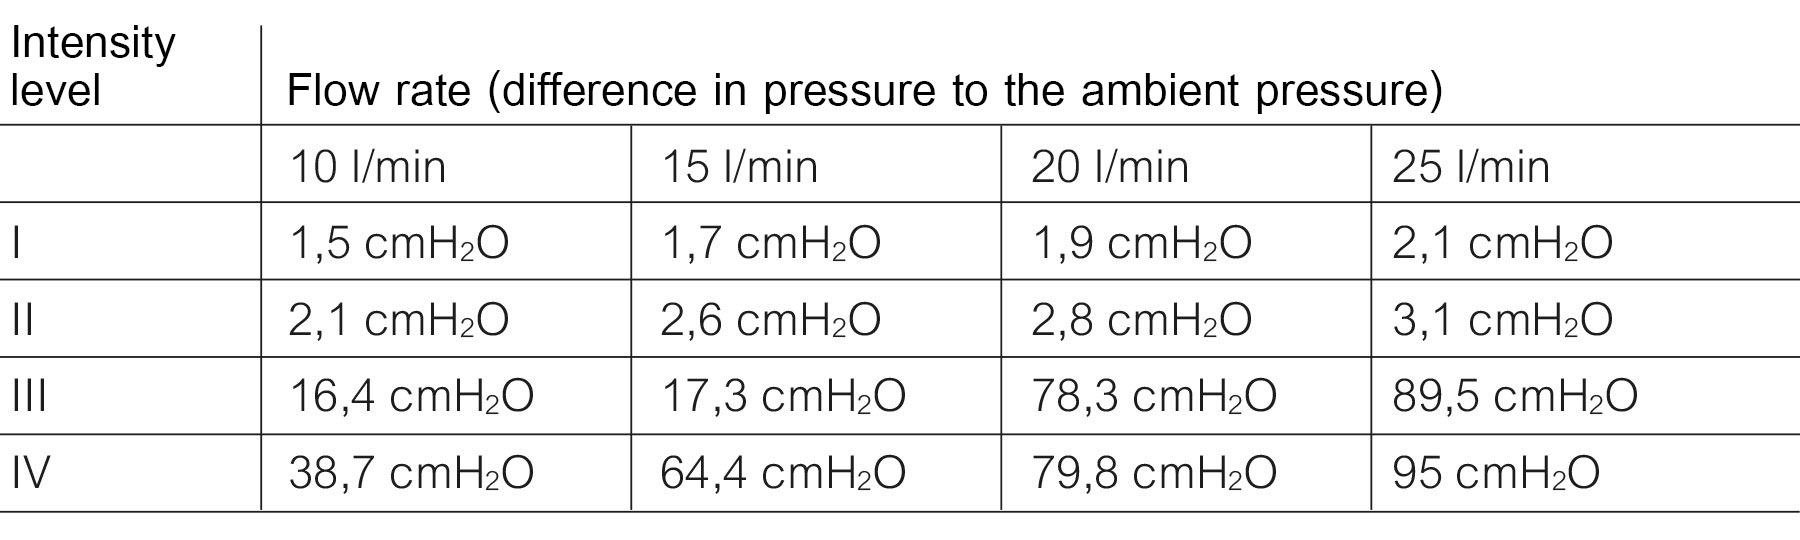 Average pressure during inhalation